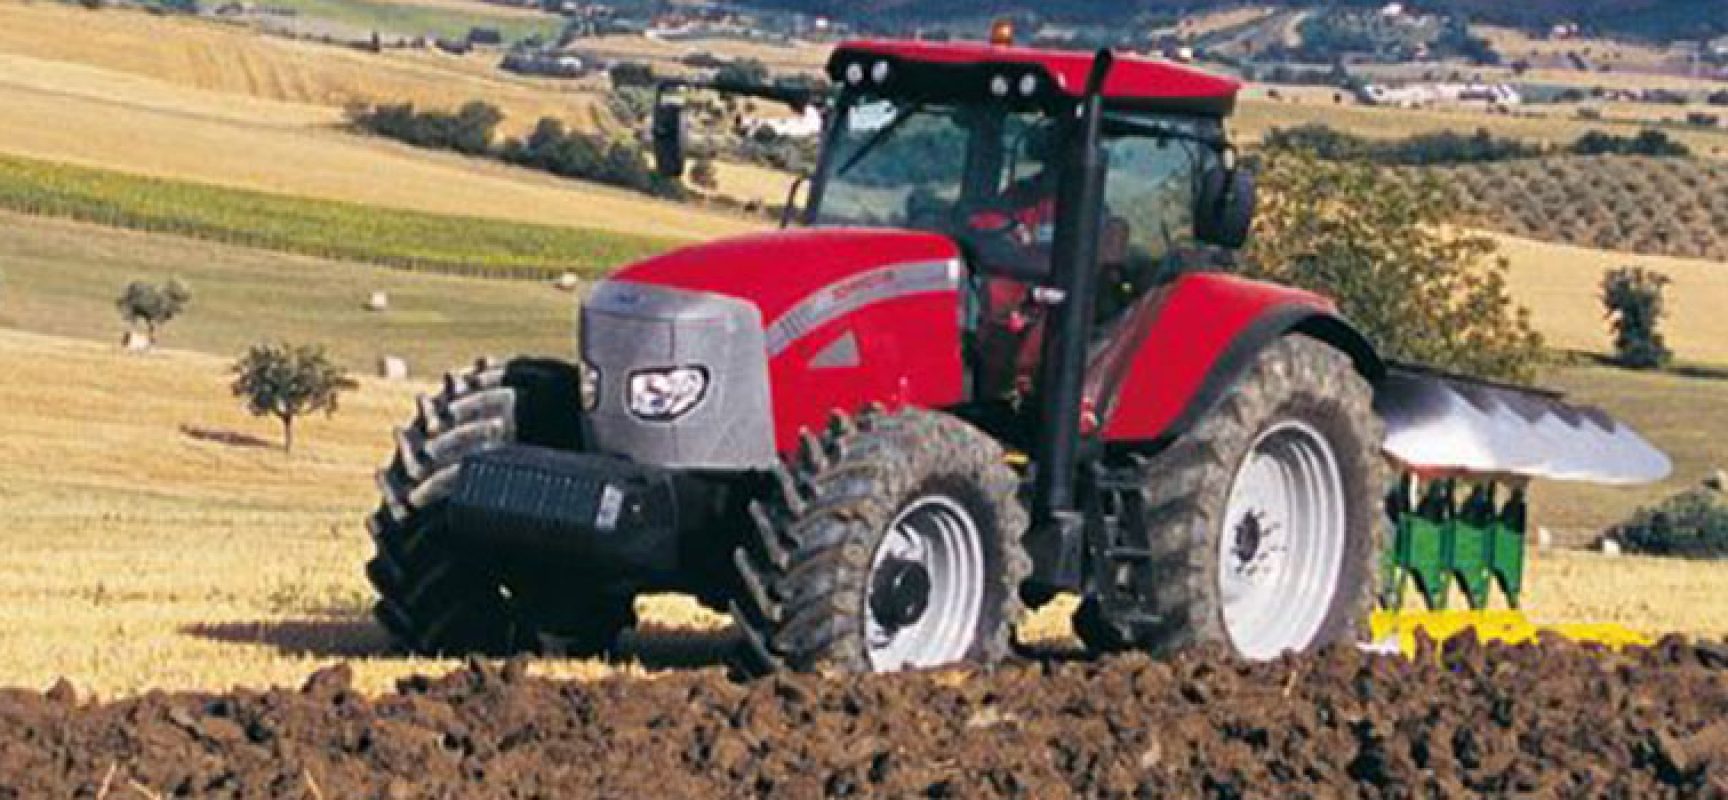 Agricoltura: al via domande per bando acquisto macchinari e attrezzature